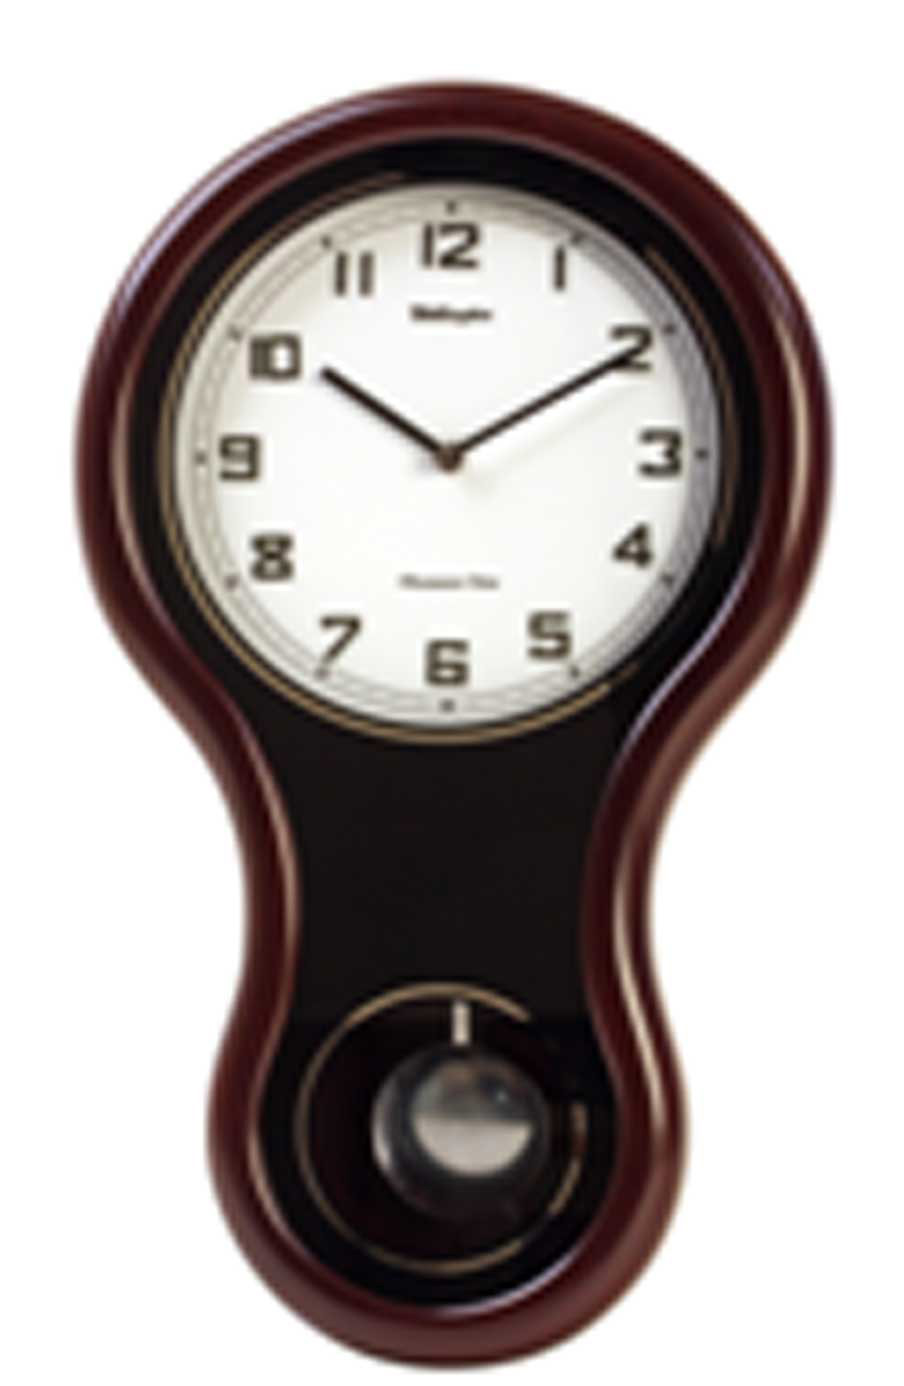 นาฬิกาไม้จริง แก่วง และ มีเสียงบอกชั่วโมง ยี่ห้อ Wellington รุ่น G20239